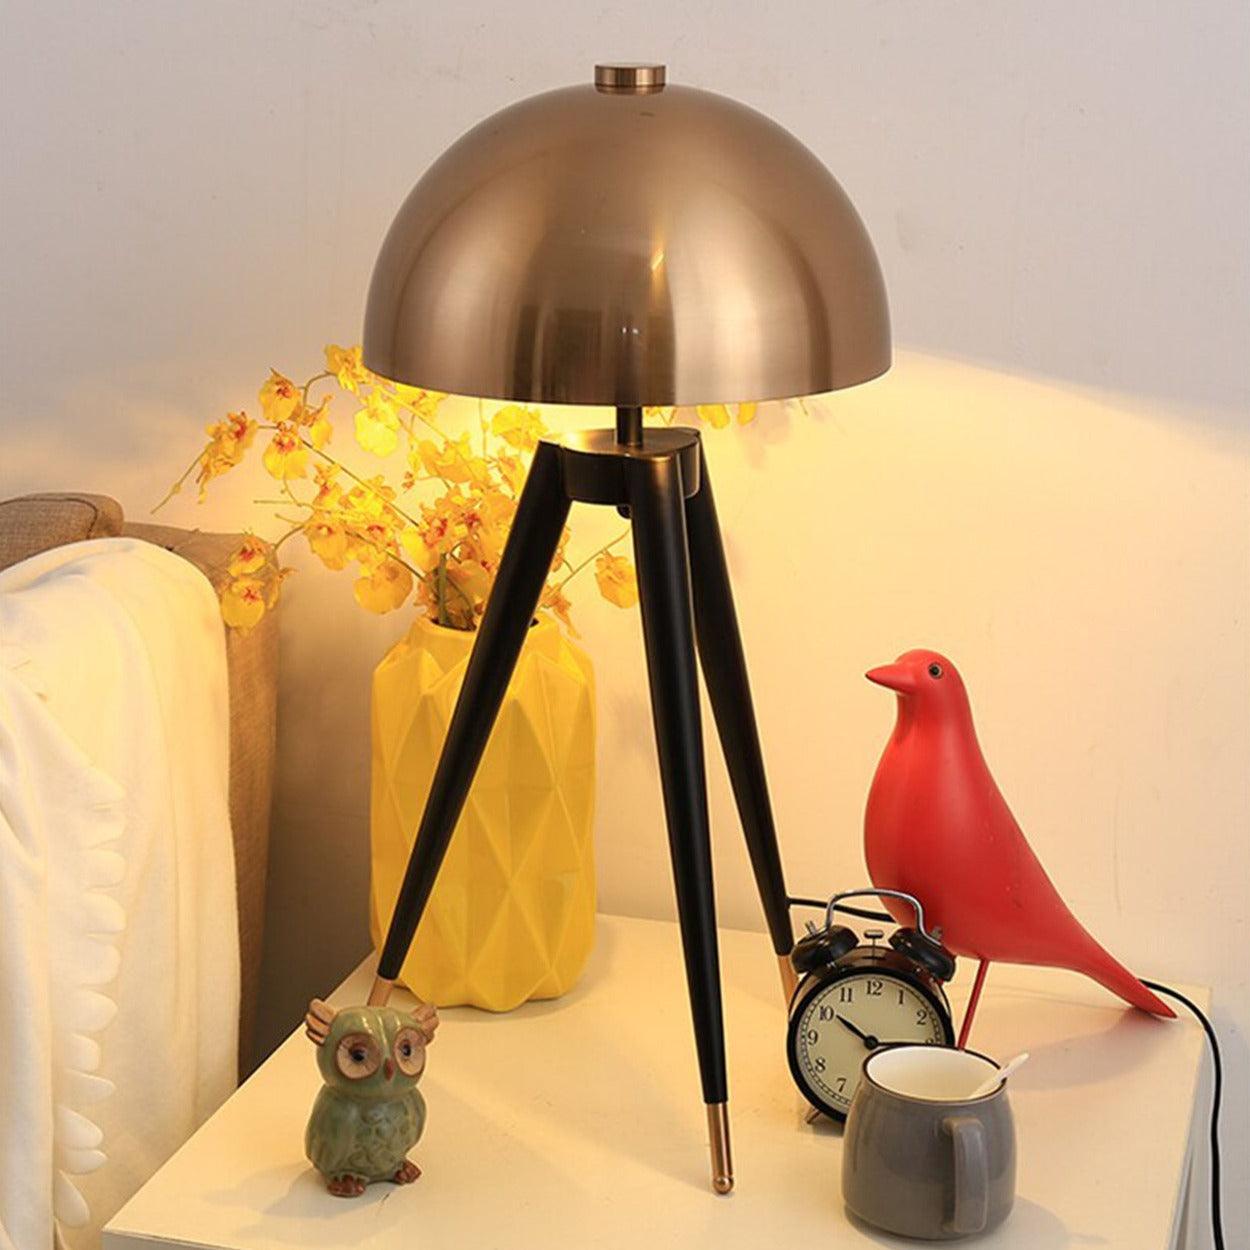 MUSHROOM HEAD TRIPOD TABLE LAMP - Ankur Lighting